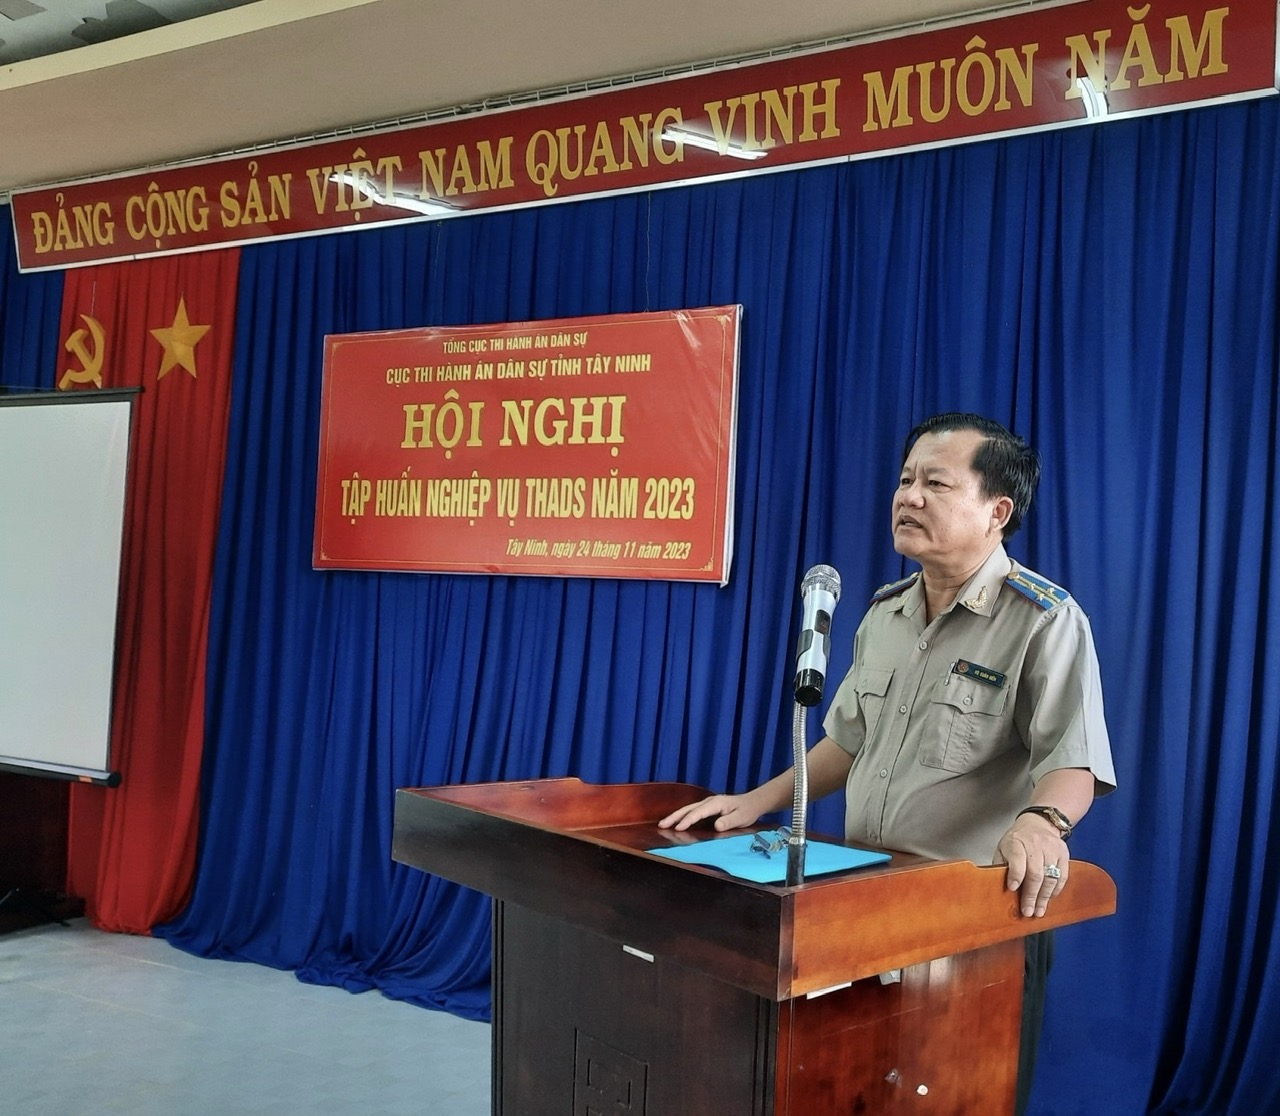 Cục Thi hành án dân sự tỉnh Tây Ninh tổ chức Hội nghị tập huấn nghiệp vụ thi hành án dân sự, kỹ năng làm việc trên môi trường số